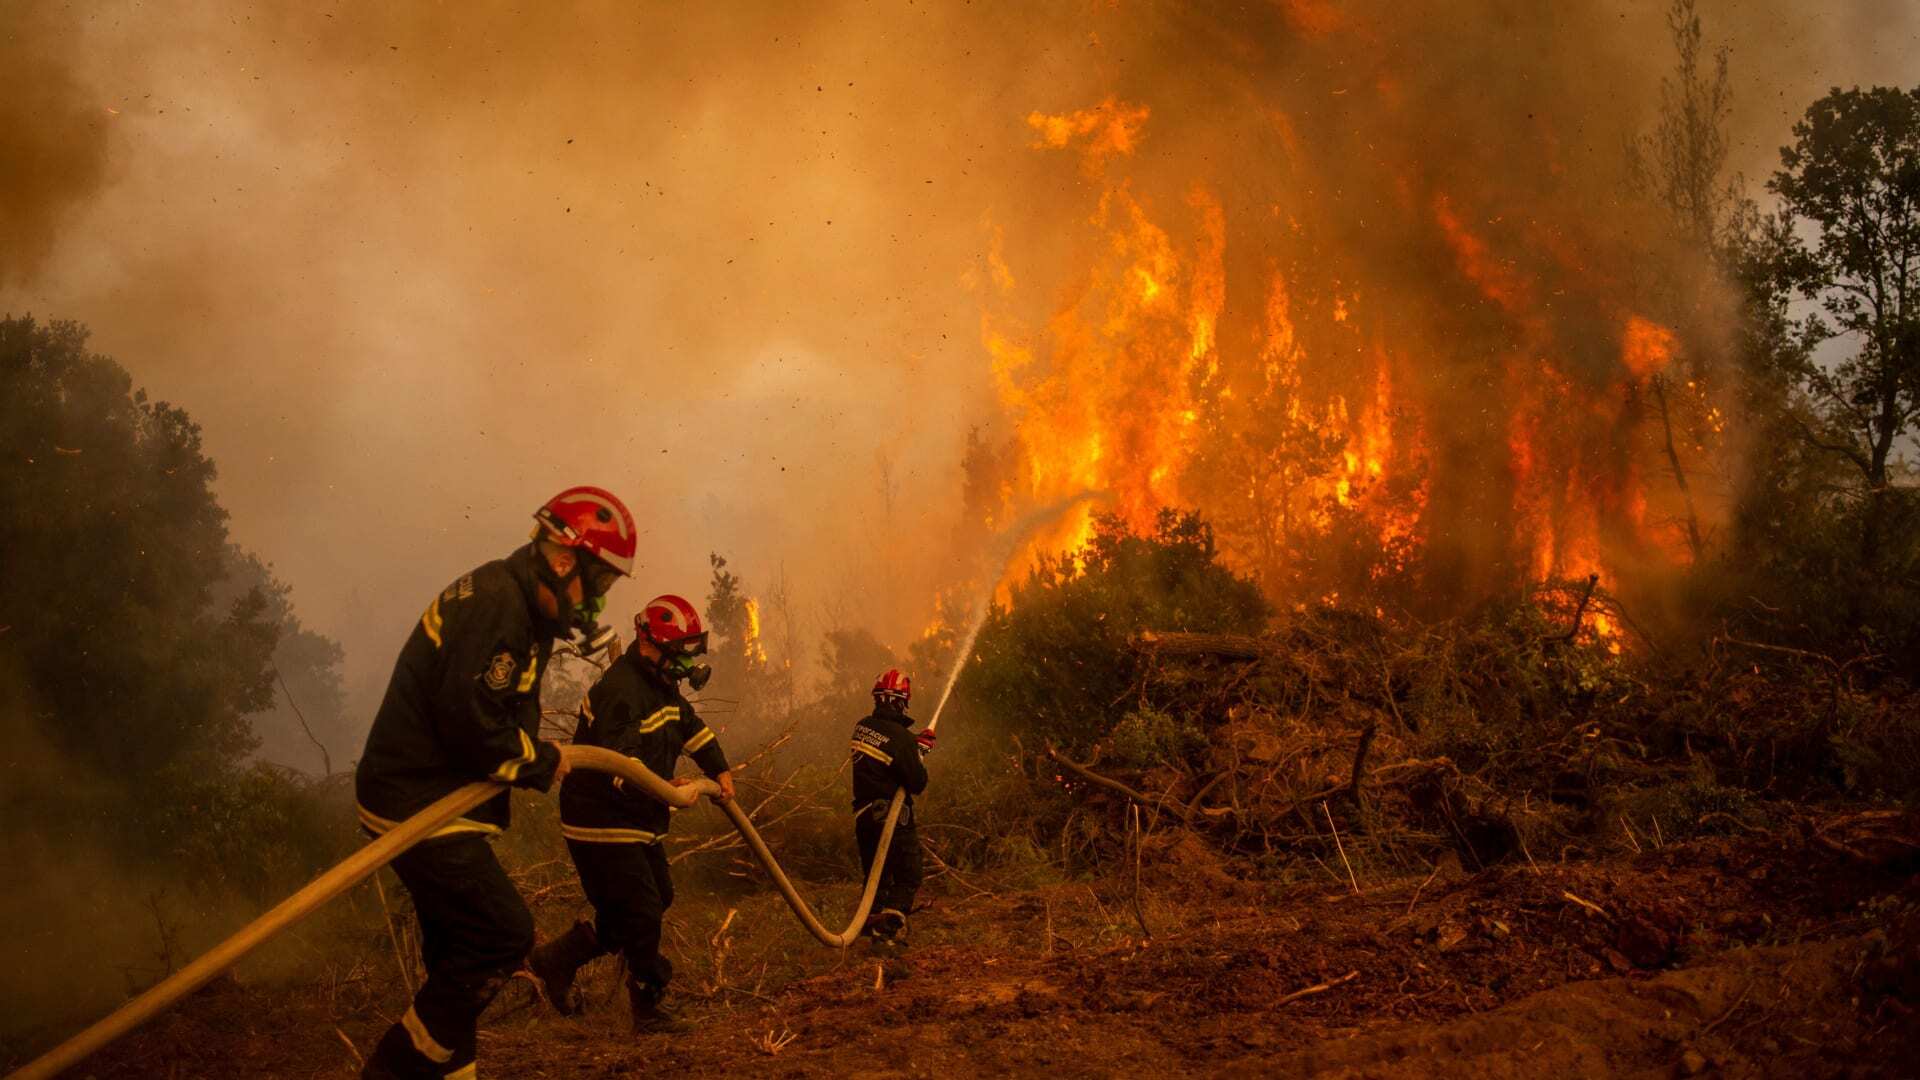 اليونان.. إنقاذ 25 مهاجرا حاصرتهم الحرائق داخل غابة قرب الحدود التركية